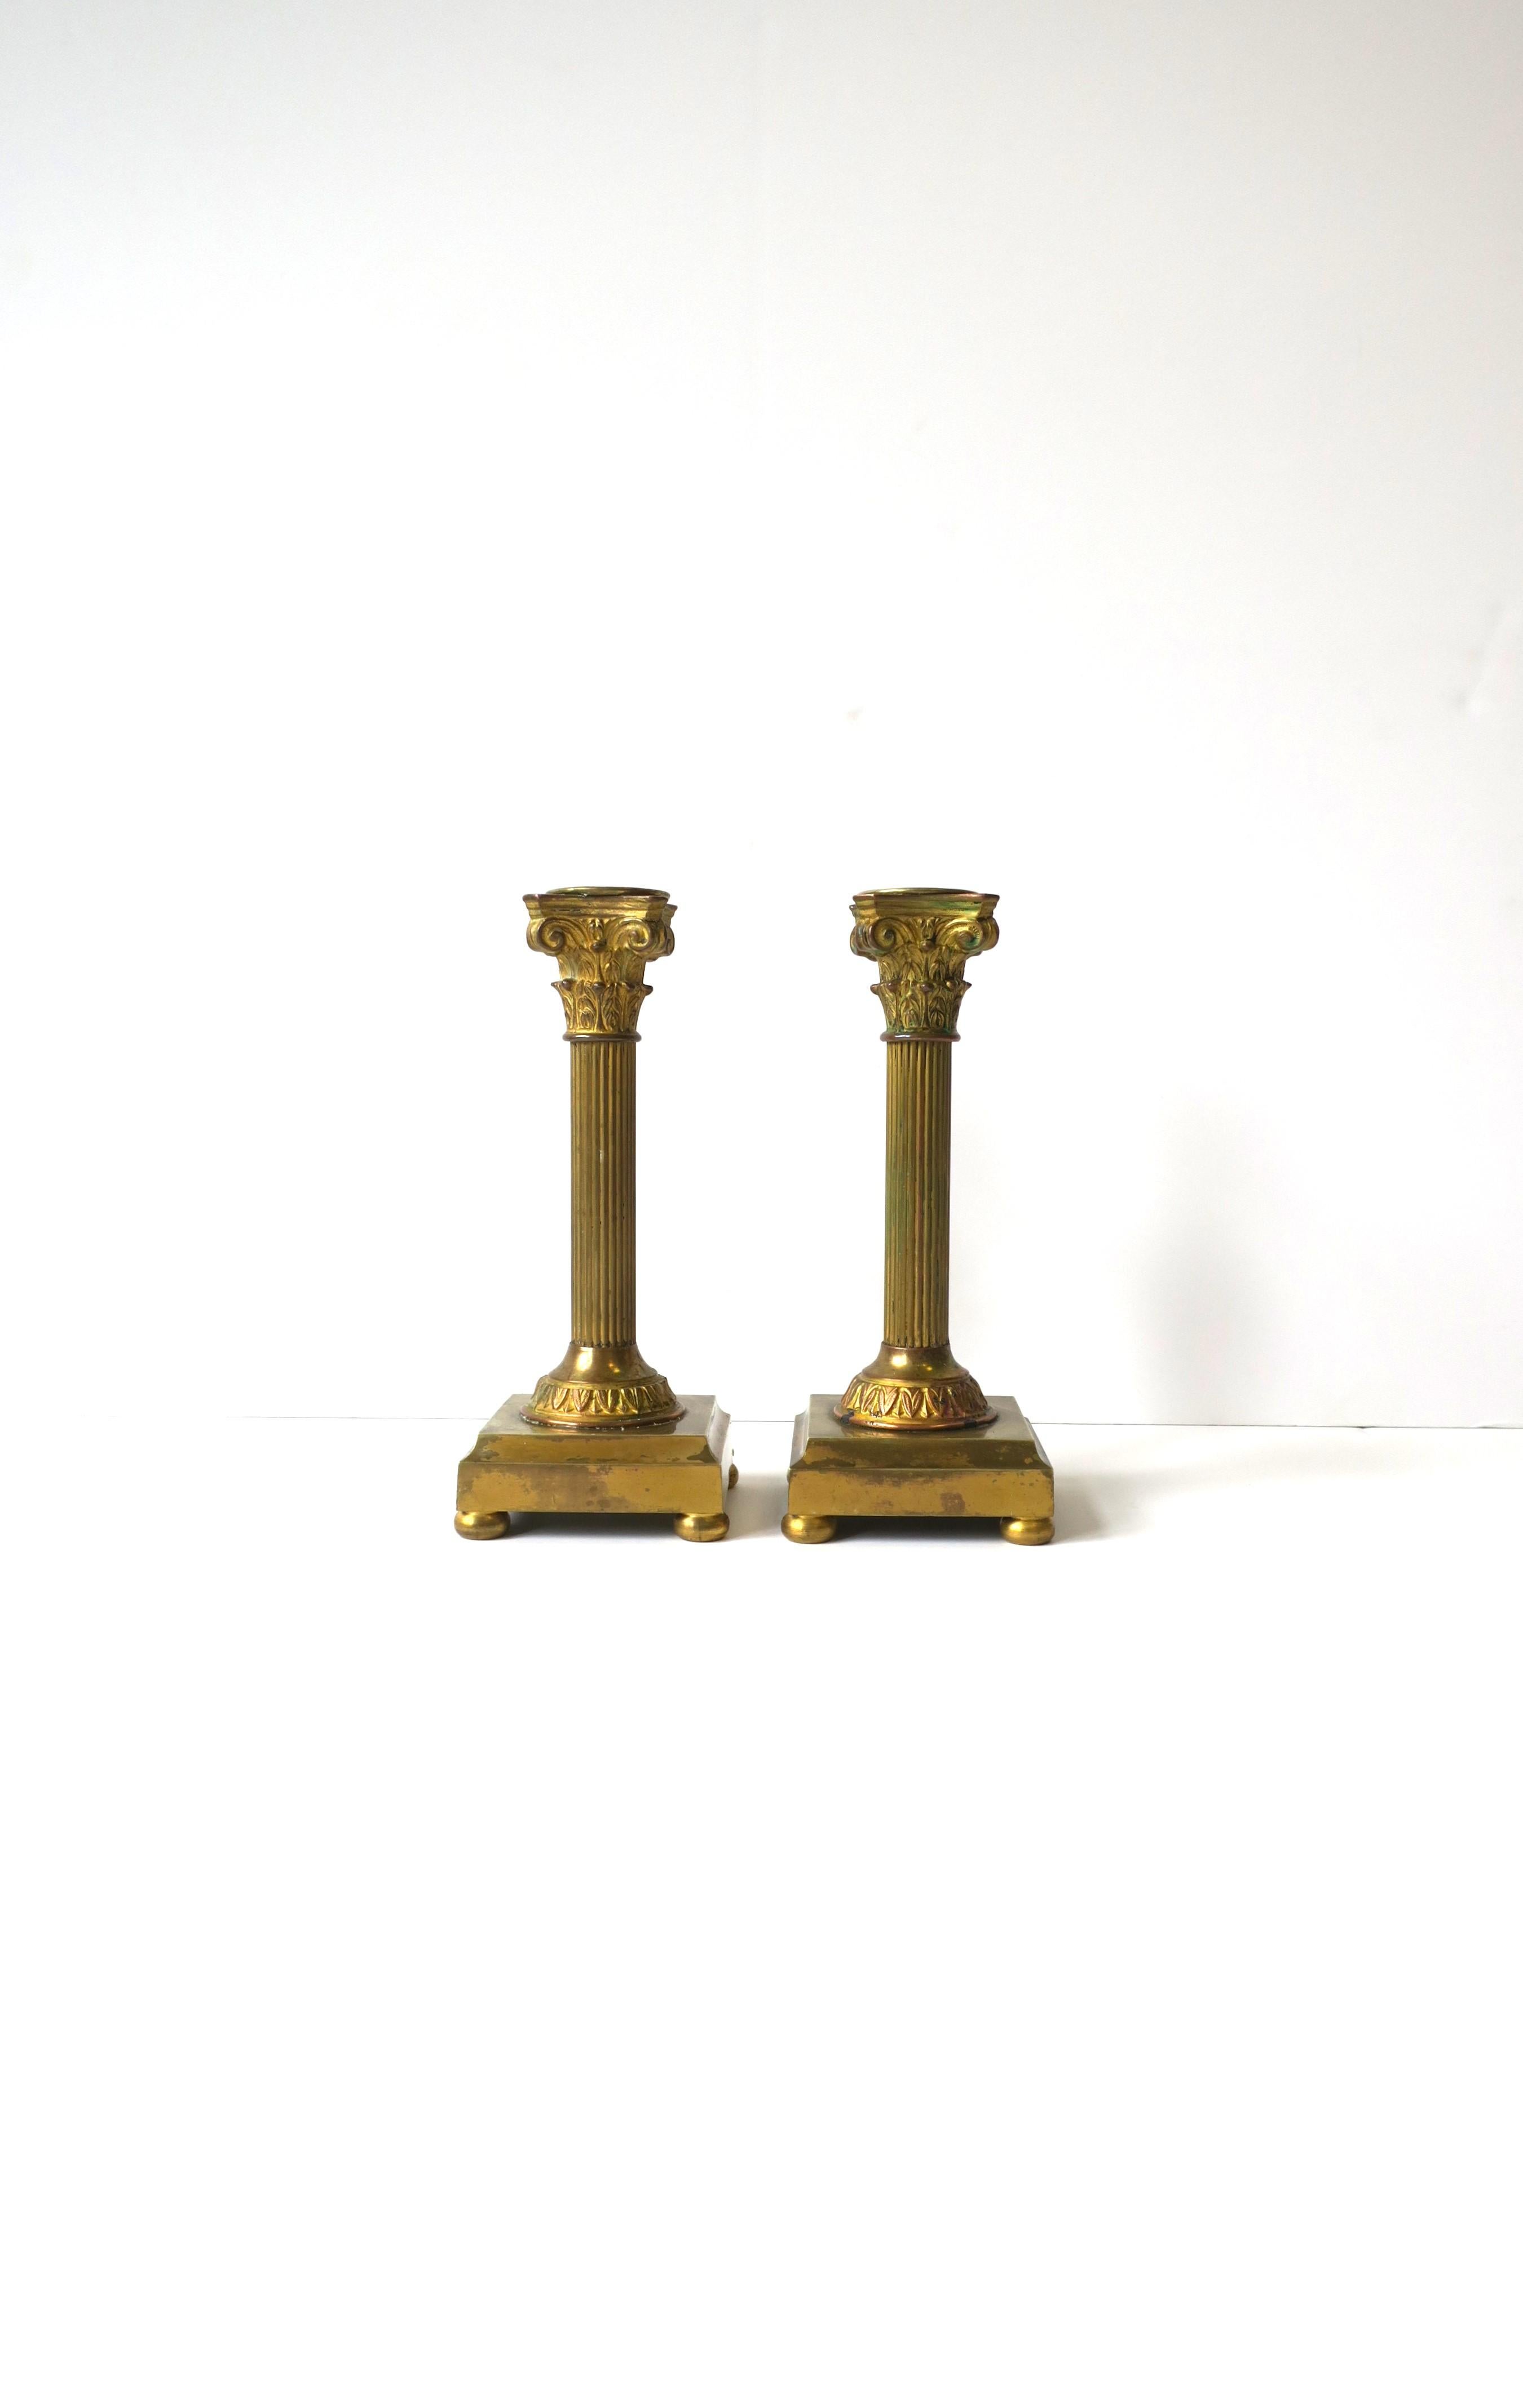 Importante paire de bougeoirs à colonne corinthienne en bronze doré de style néoclassique, vers la fin du XIXe siècle, France. Les chandeliers représentent la colonne corinthienne, en bronze avec un revêtement en cuivre, laiton et or doré, une base